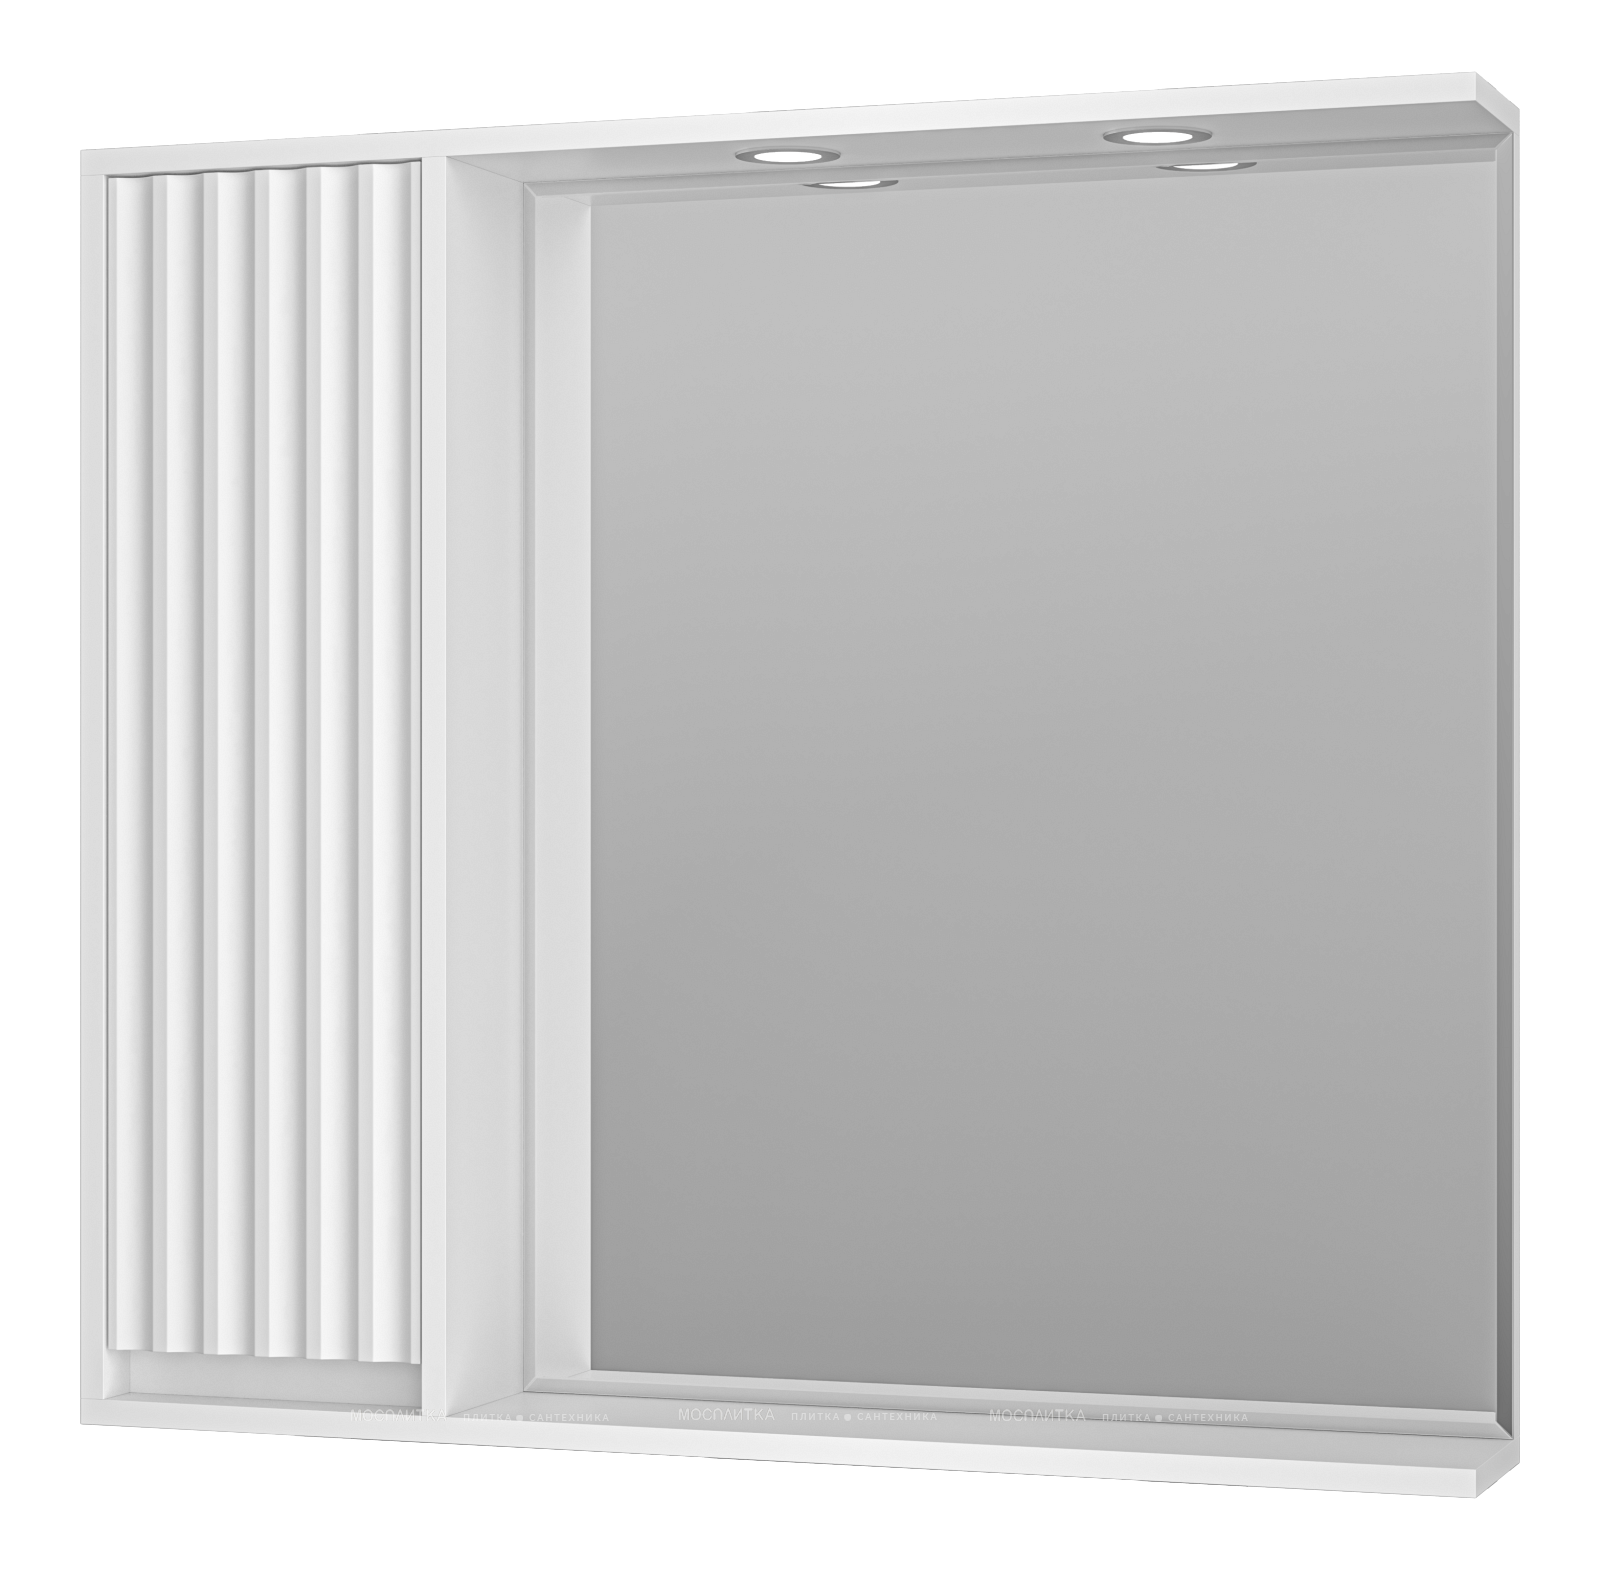 Зеркальный шкаф Brevita Balaton 90 см BAL-04090-01-Л левый, с подсветкой, белый - изображение 2